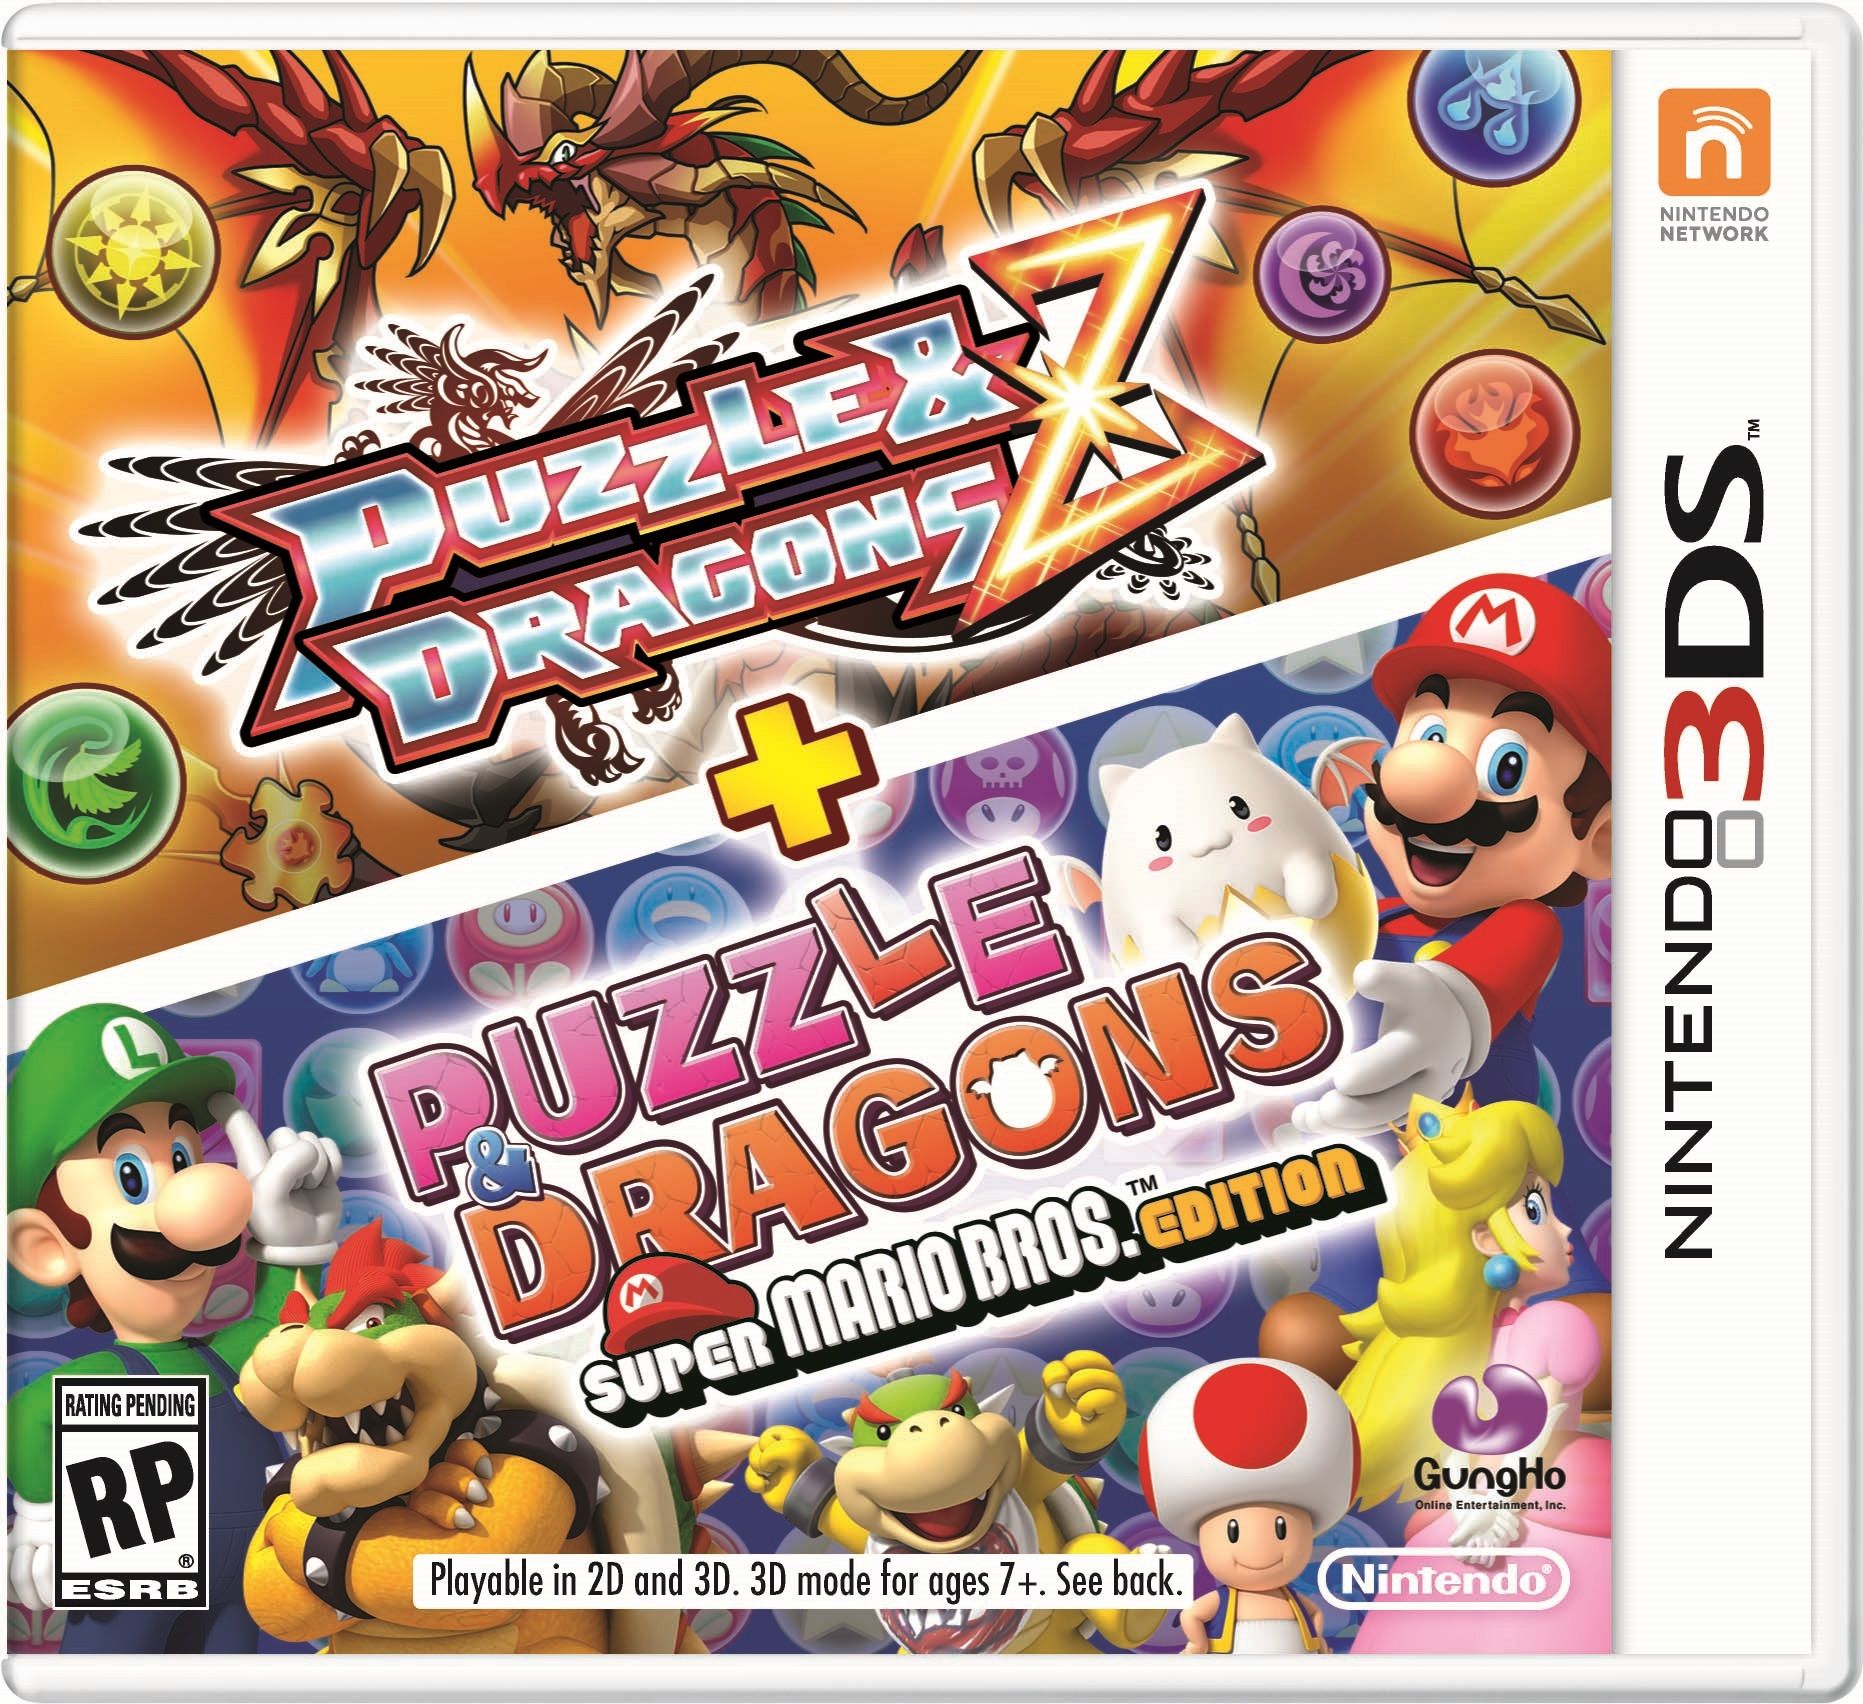 Puzzle Dragons Z + Puzzle Dragons Super Mario Bros. Edition